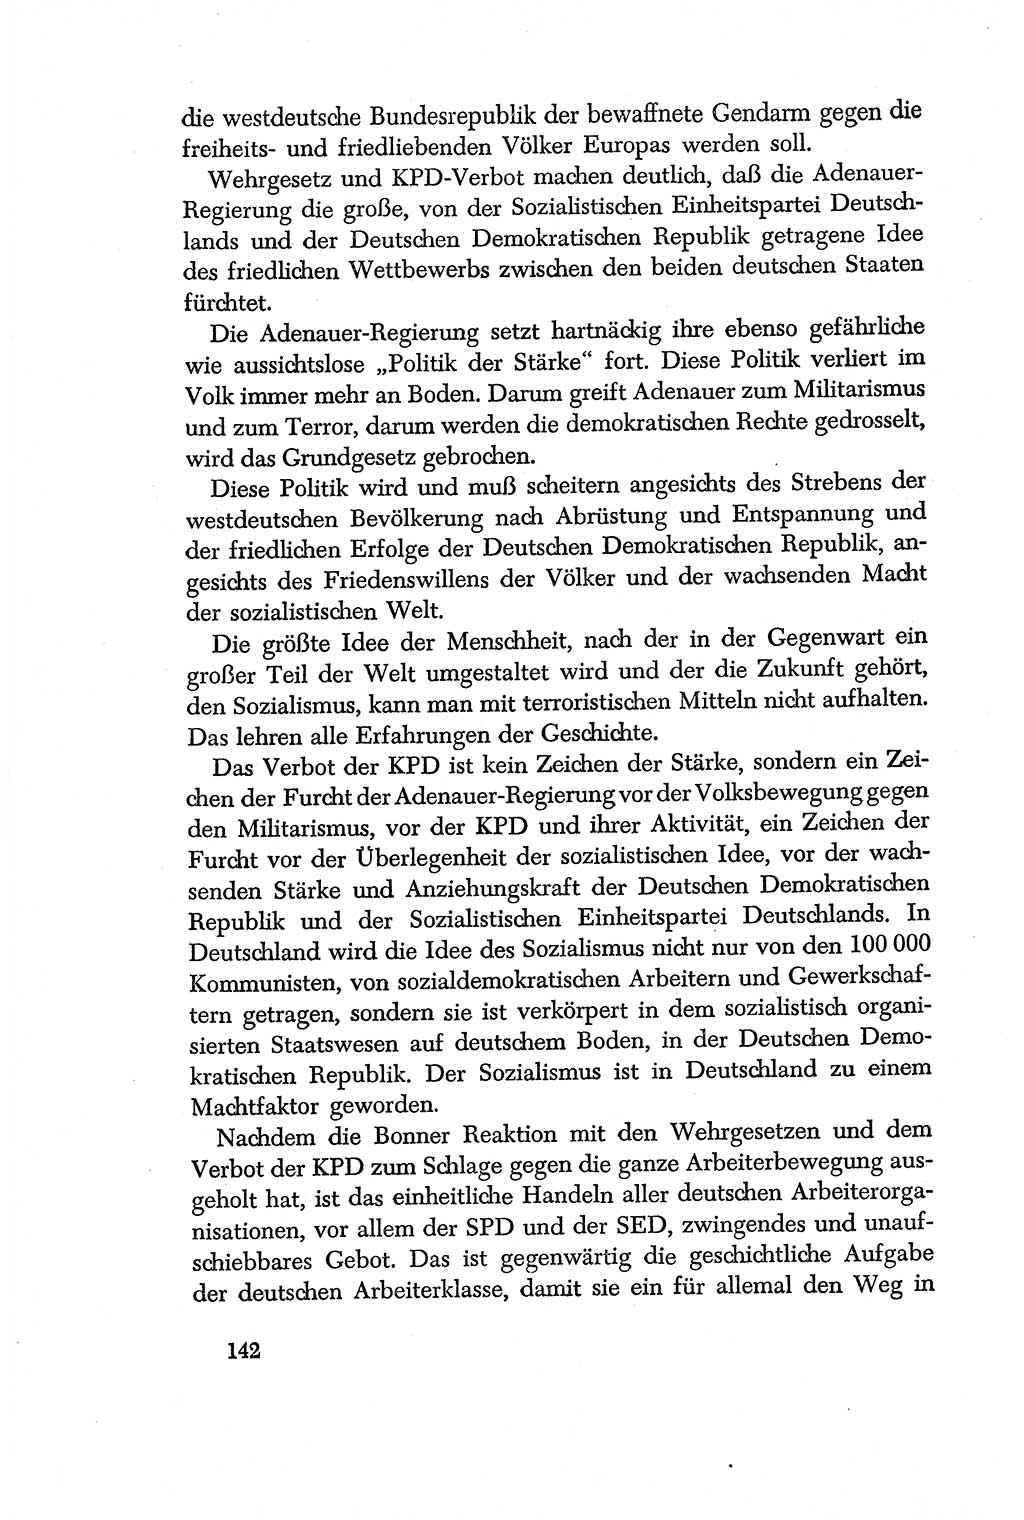 Dokumente der Sozialistischen Einheitspartei Deutschlands (SED) [Deutsche Demokratische Republik (DDR)] 1956-1957, Seite 142 (Dok. SED DDR 1956-1957, S. 142)